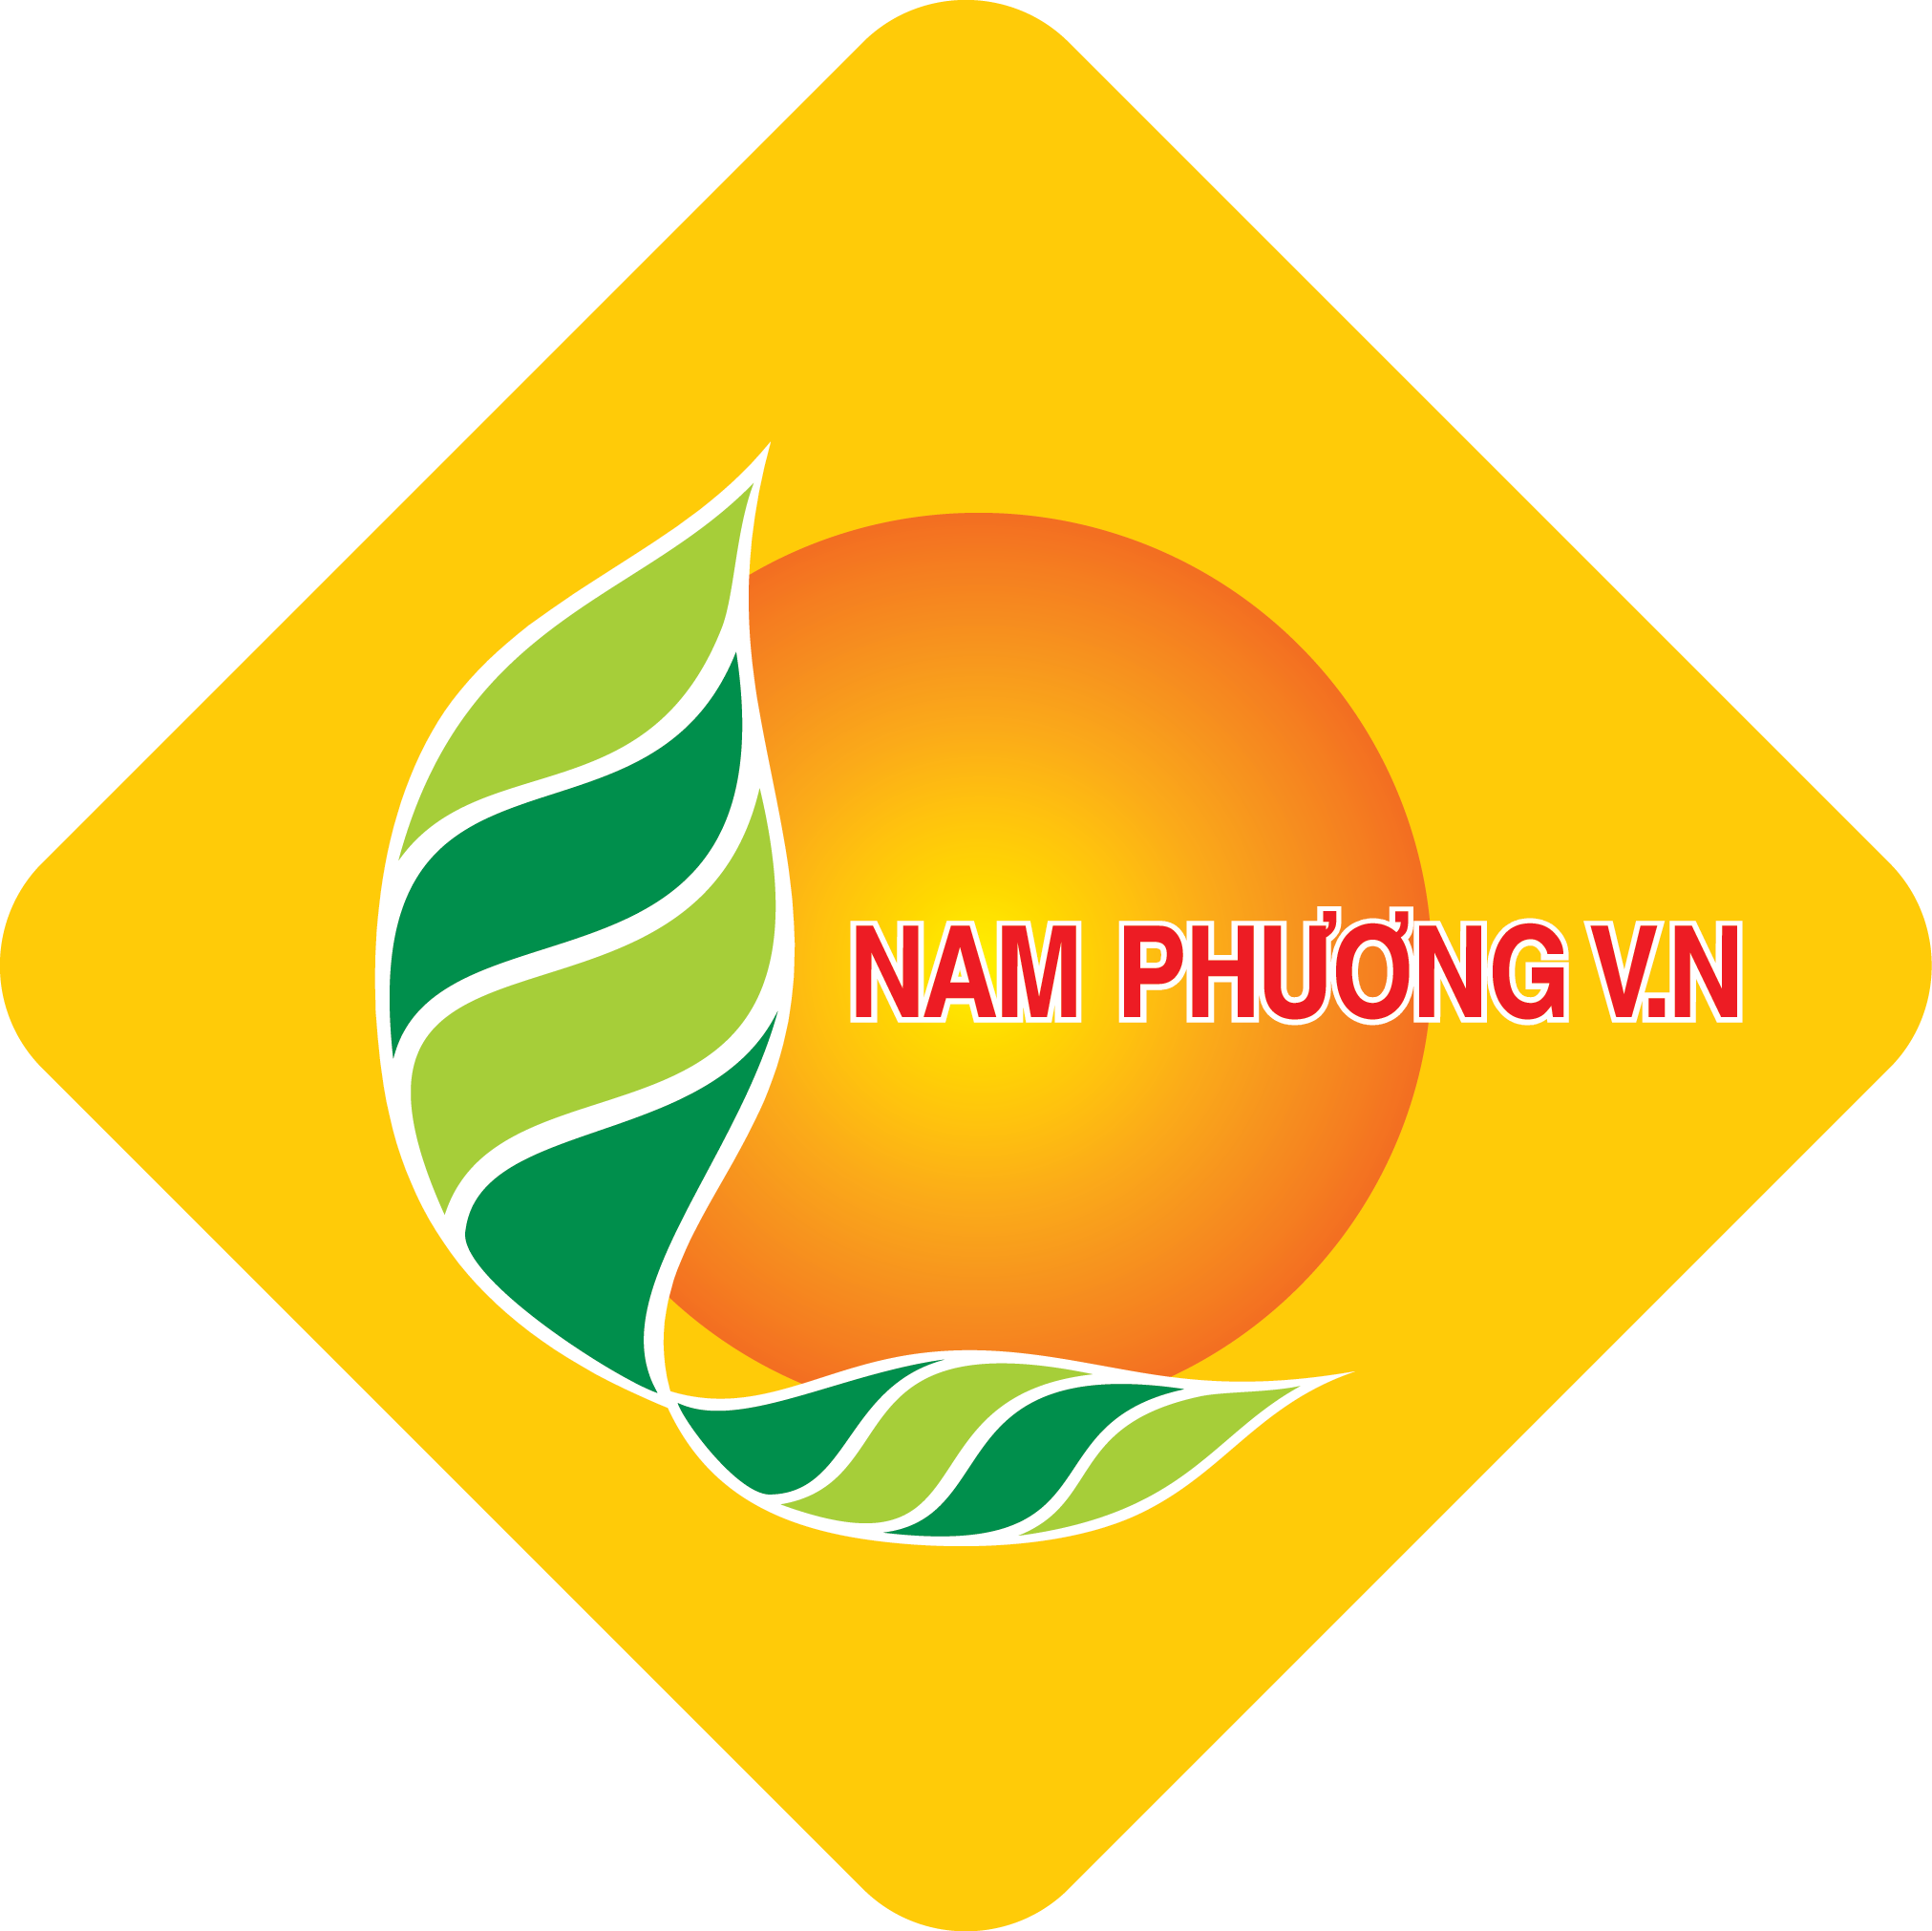 NAM PHUONG